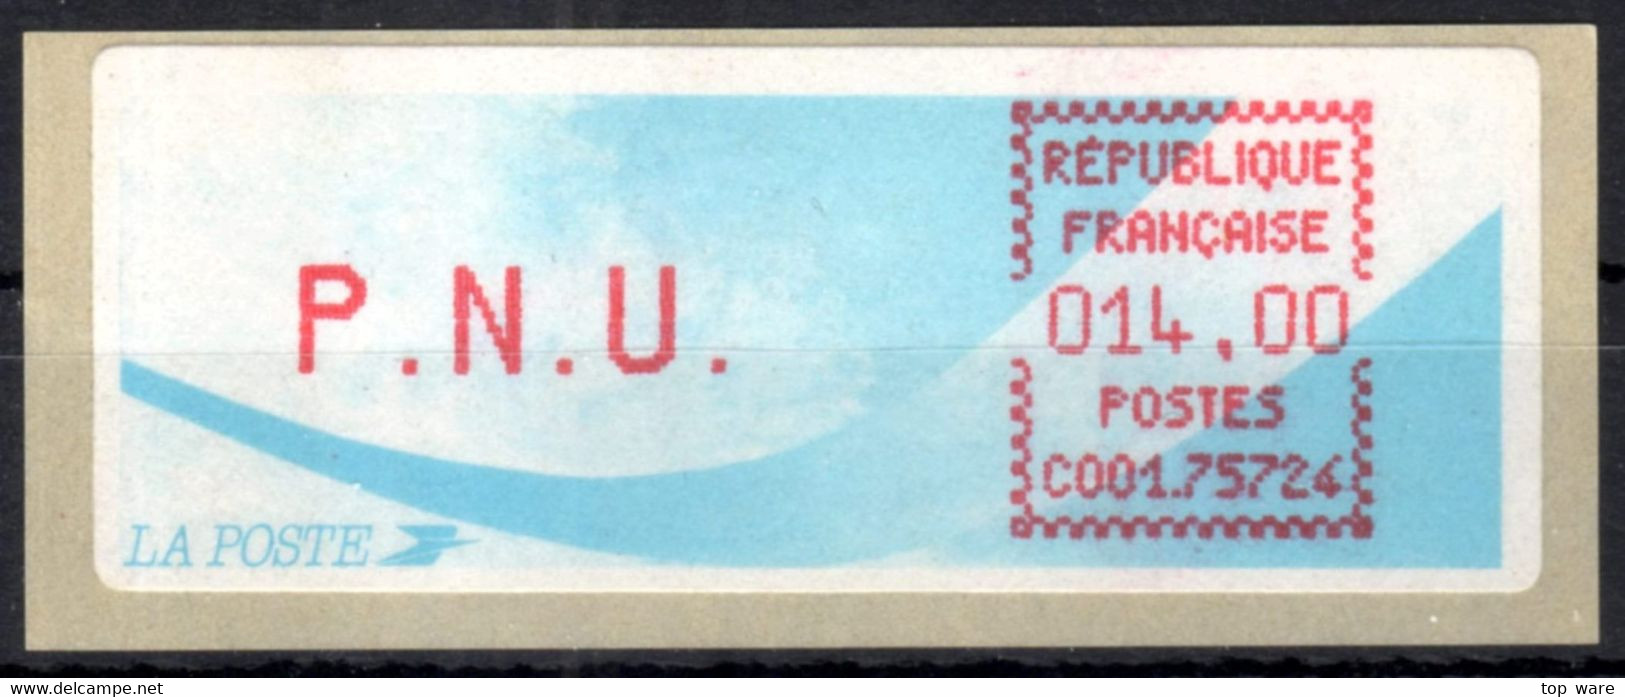 Frankreich France ATM Stamps LSA C001.75724 Paris 124 / Michel 9.9 B / PNU 14,00 ** / Distributeurs Automatenmarken - 1988 « Comète »